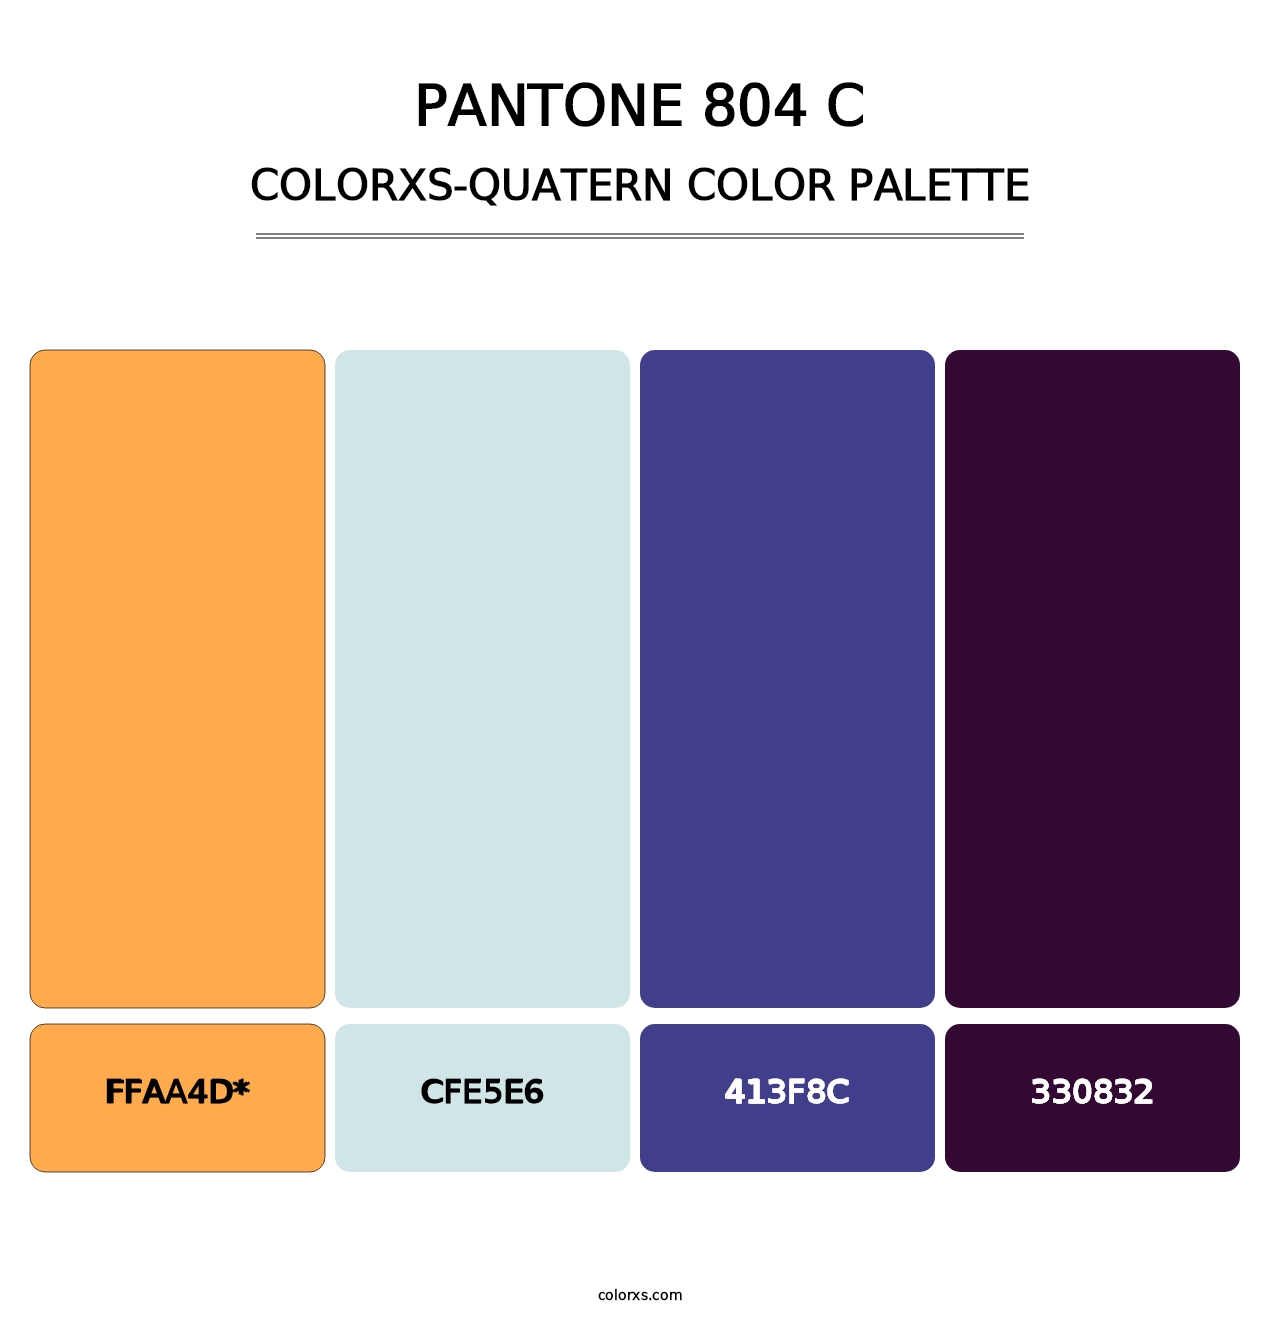 PANTONE 804 C - Colorxs Quatern Palette